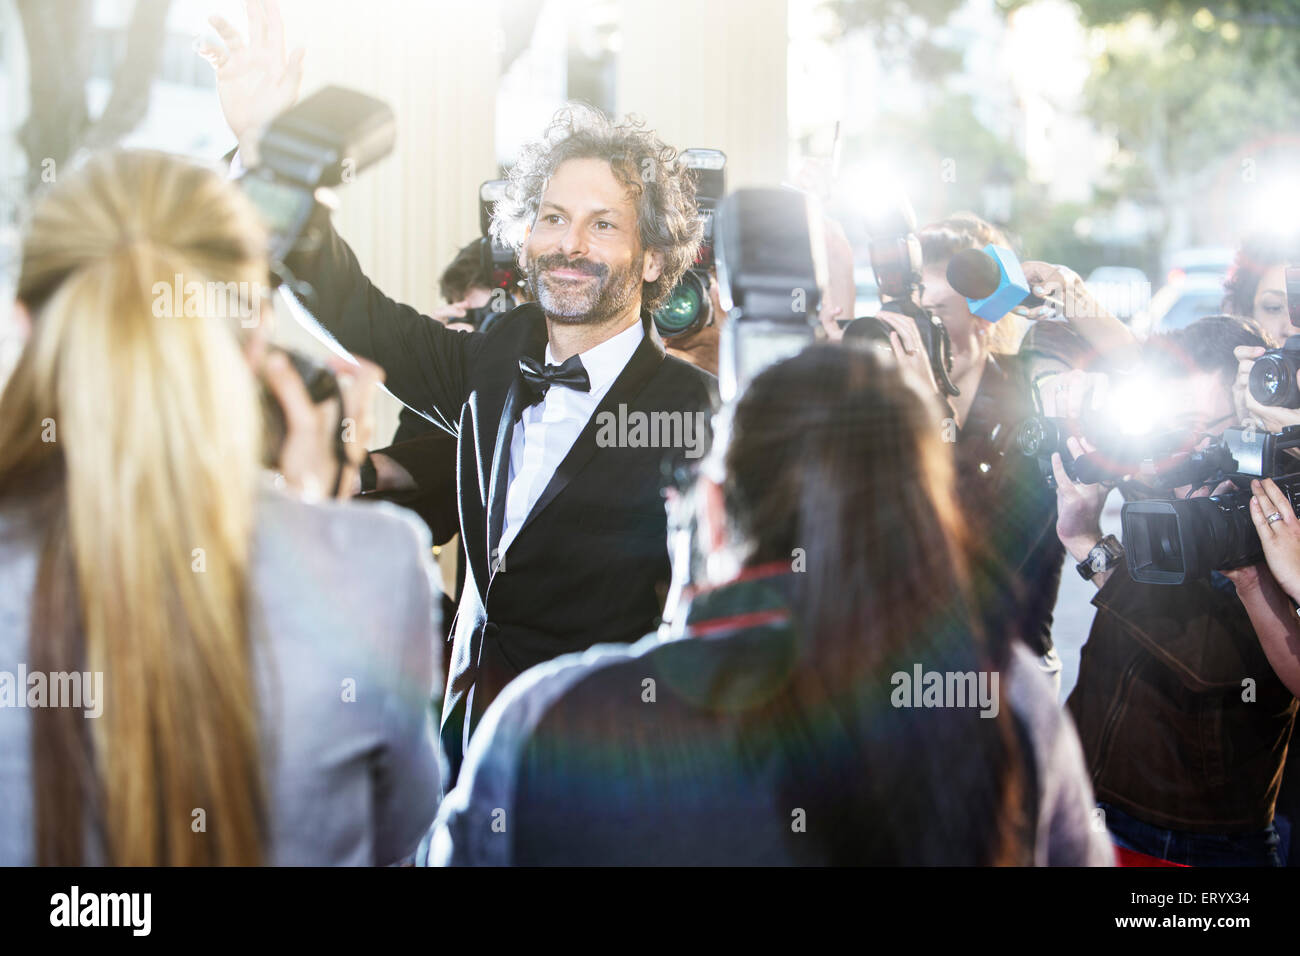 Celebrity saludaban a los paparazzi fotógrafos en el evento Foto de stock